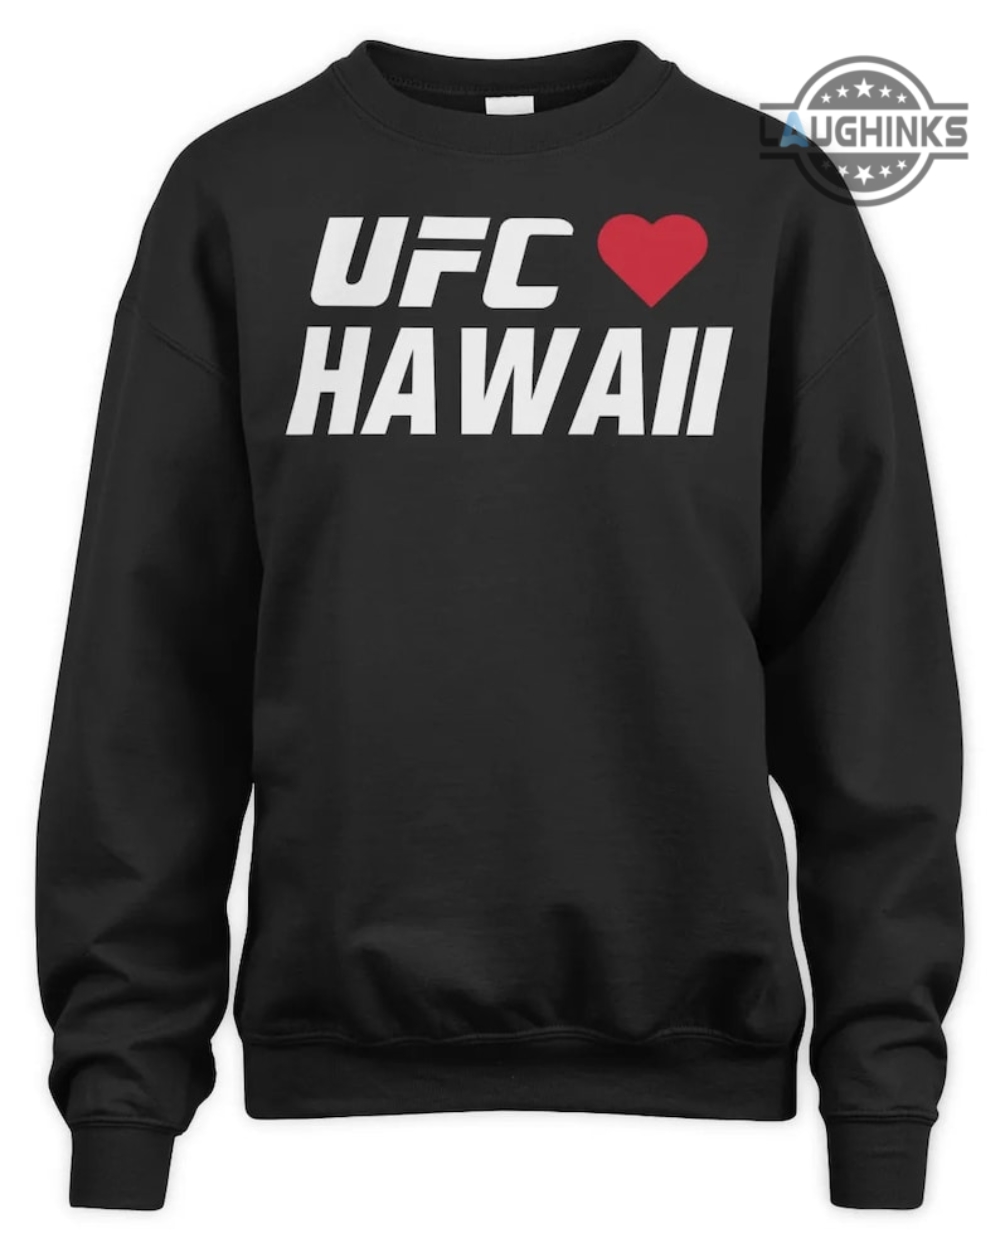 Ufc Hawaii Shirts Ufc Loves Hawaii Shirt Ufc Hawaii Sweatshirt Ufc Loves Hawaii Hoodie Maui Strong Shirt Pray For Maui Hawaii T Shirt